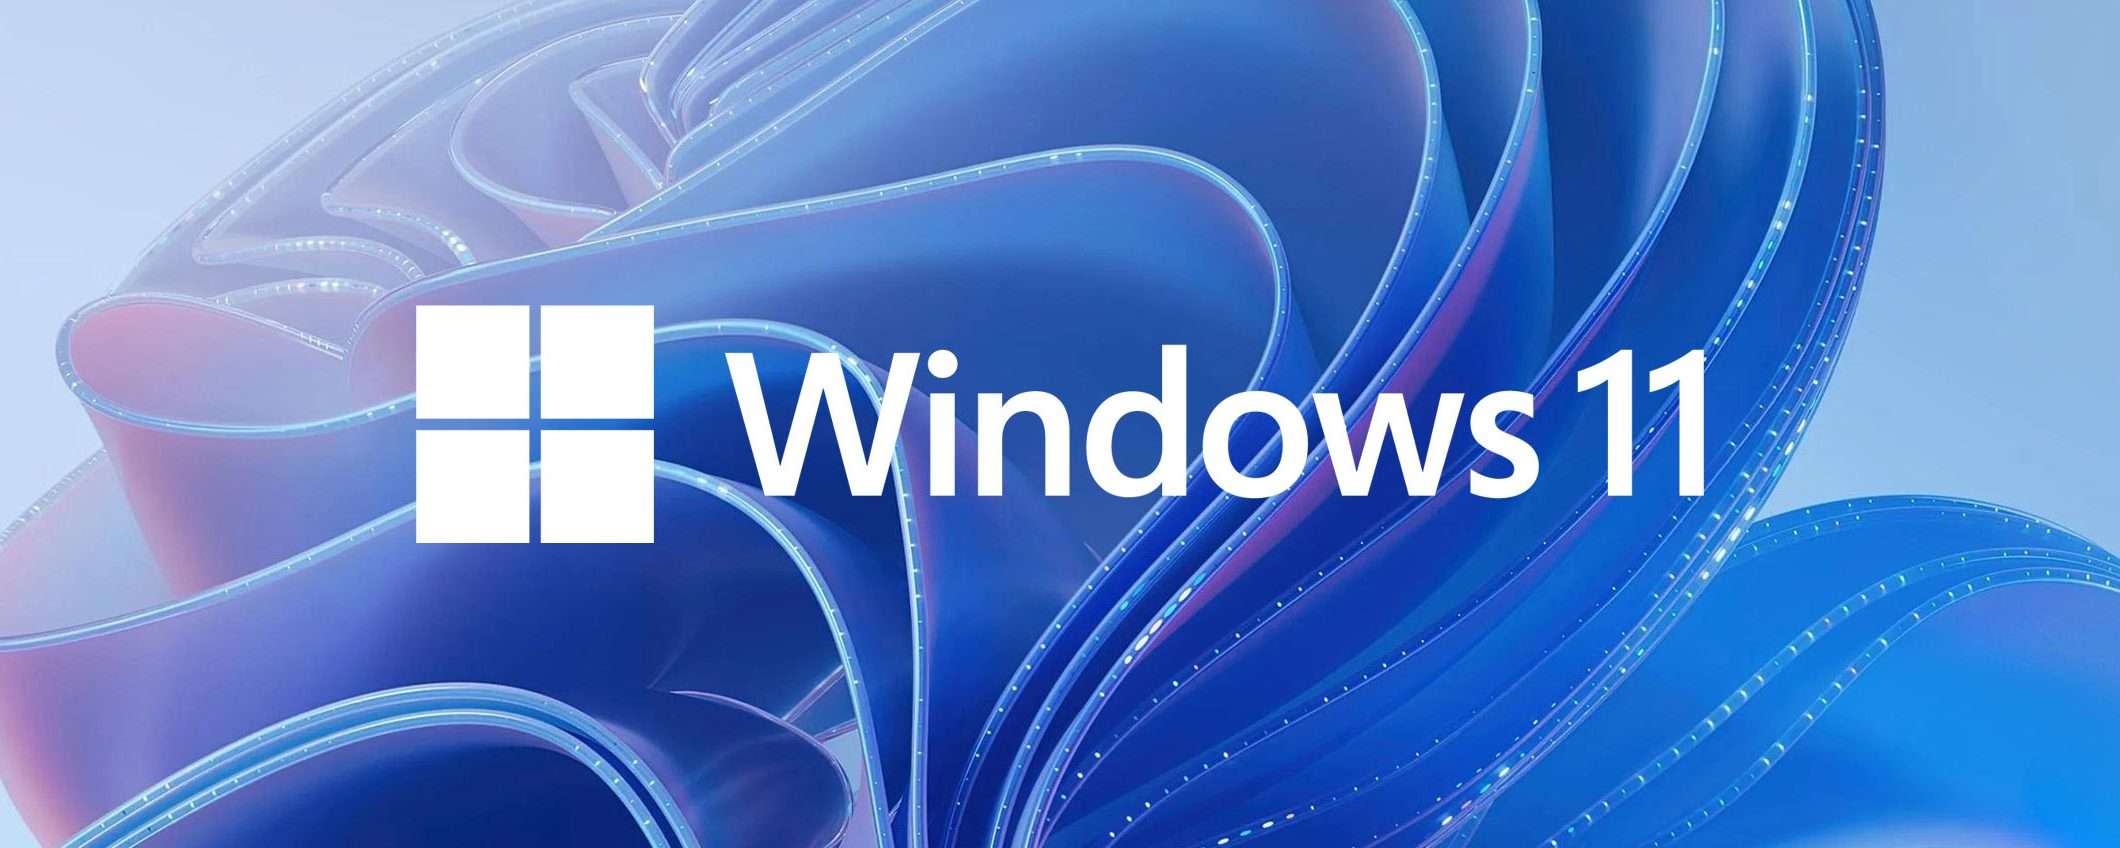 Windows 11: test per il risparmio energetico